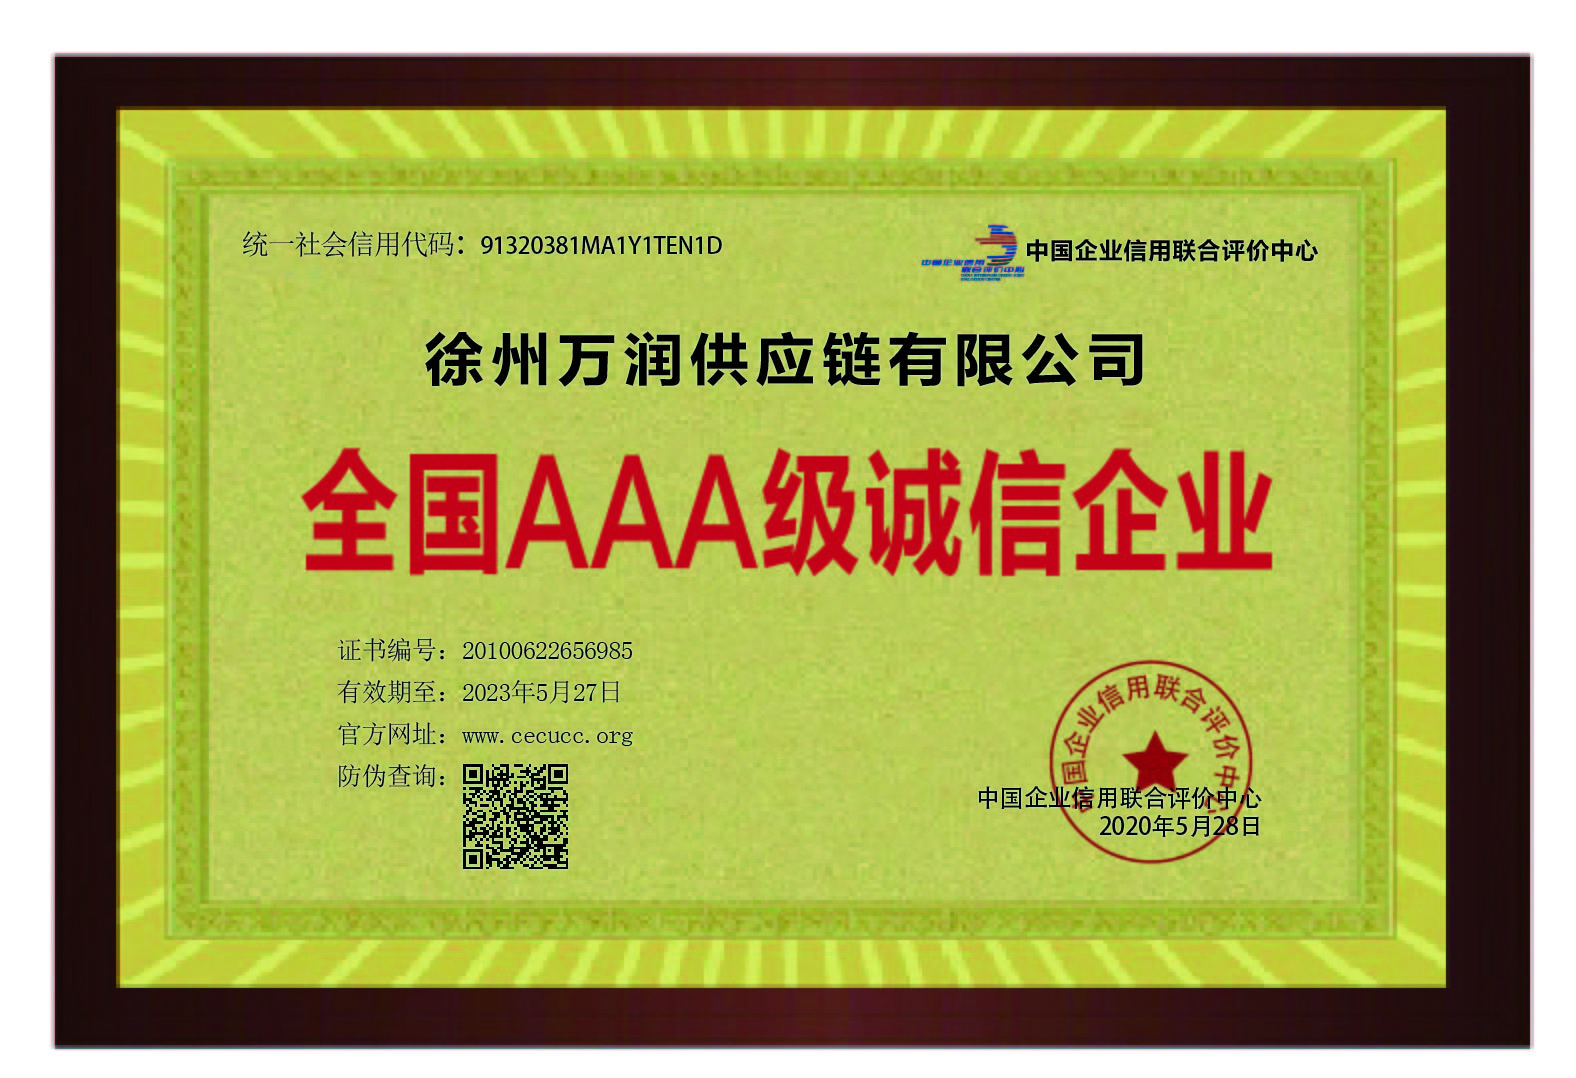 徐州紐泰克供應鏈有限公司榮譽資(zī)質誠信AAA